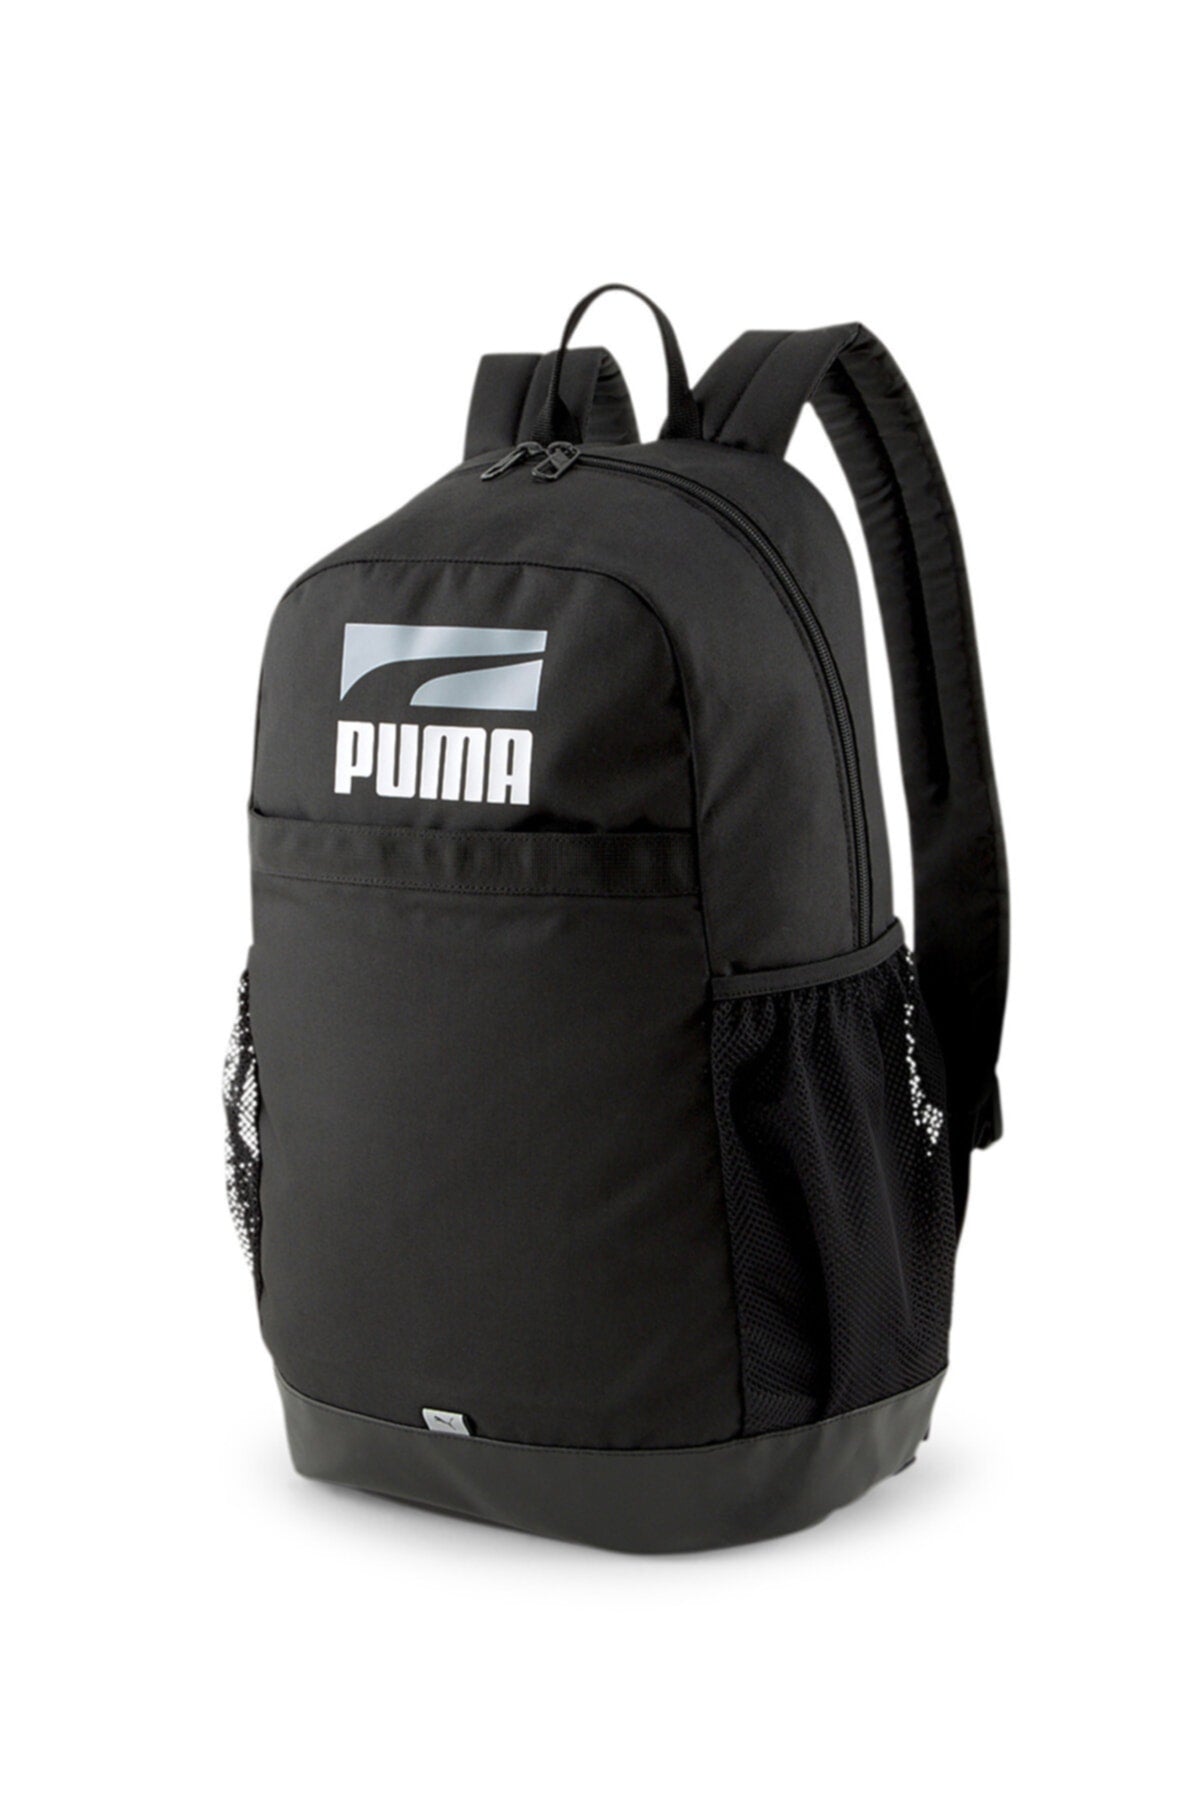 Plus Backpack II Pum Black Men's Backpack